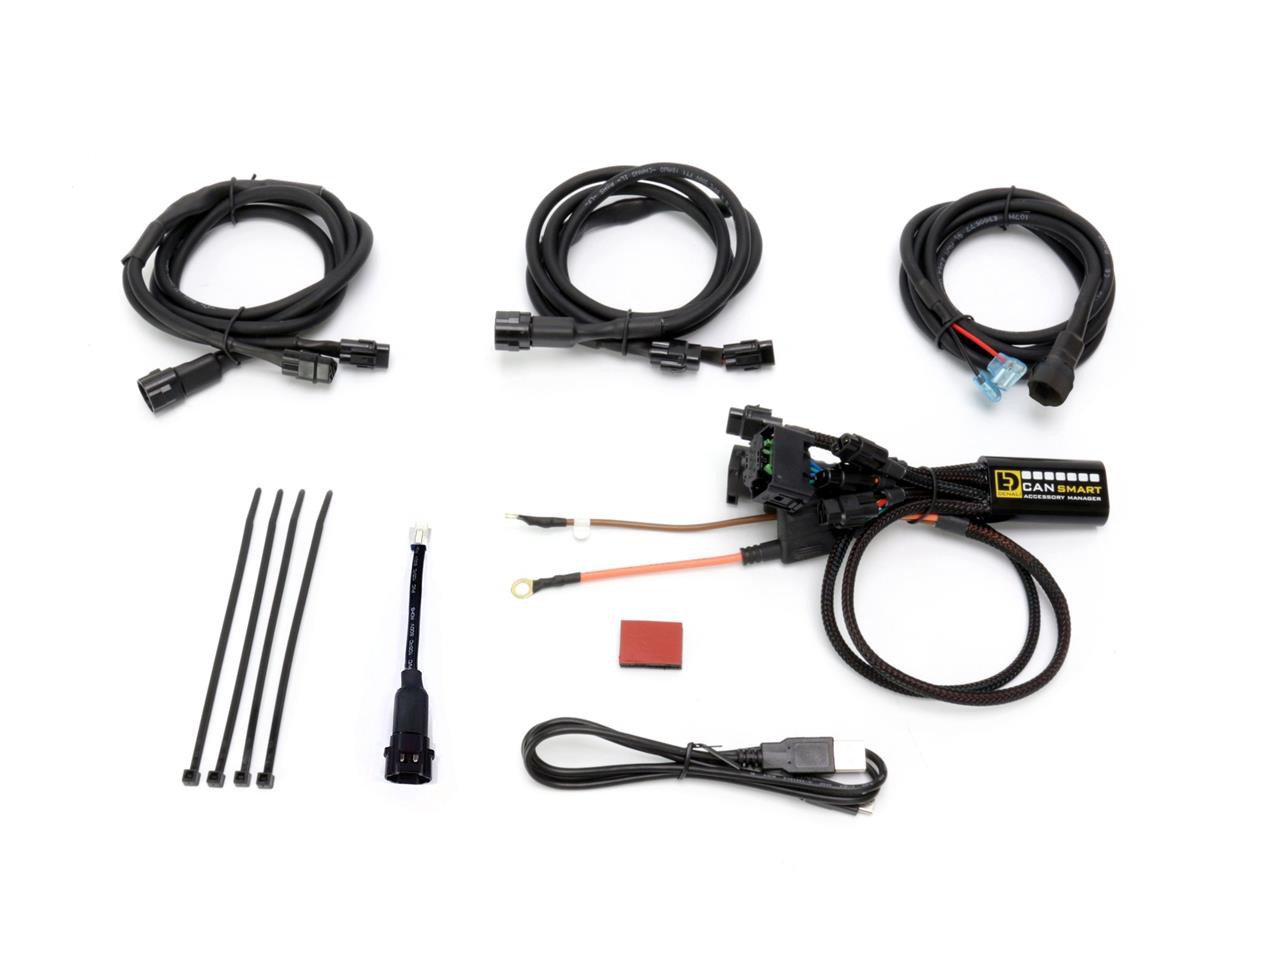 Faisceau CANSMART Plug-N-Play GEN II pour Feux Additionnel BMW R 1200 GS (04-14)